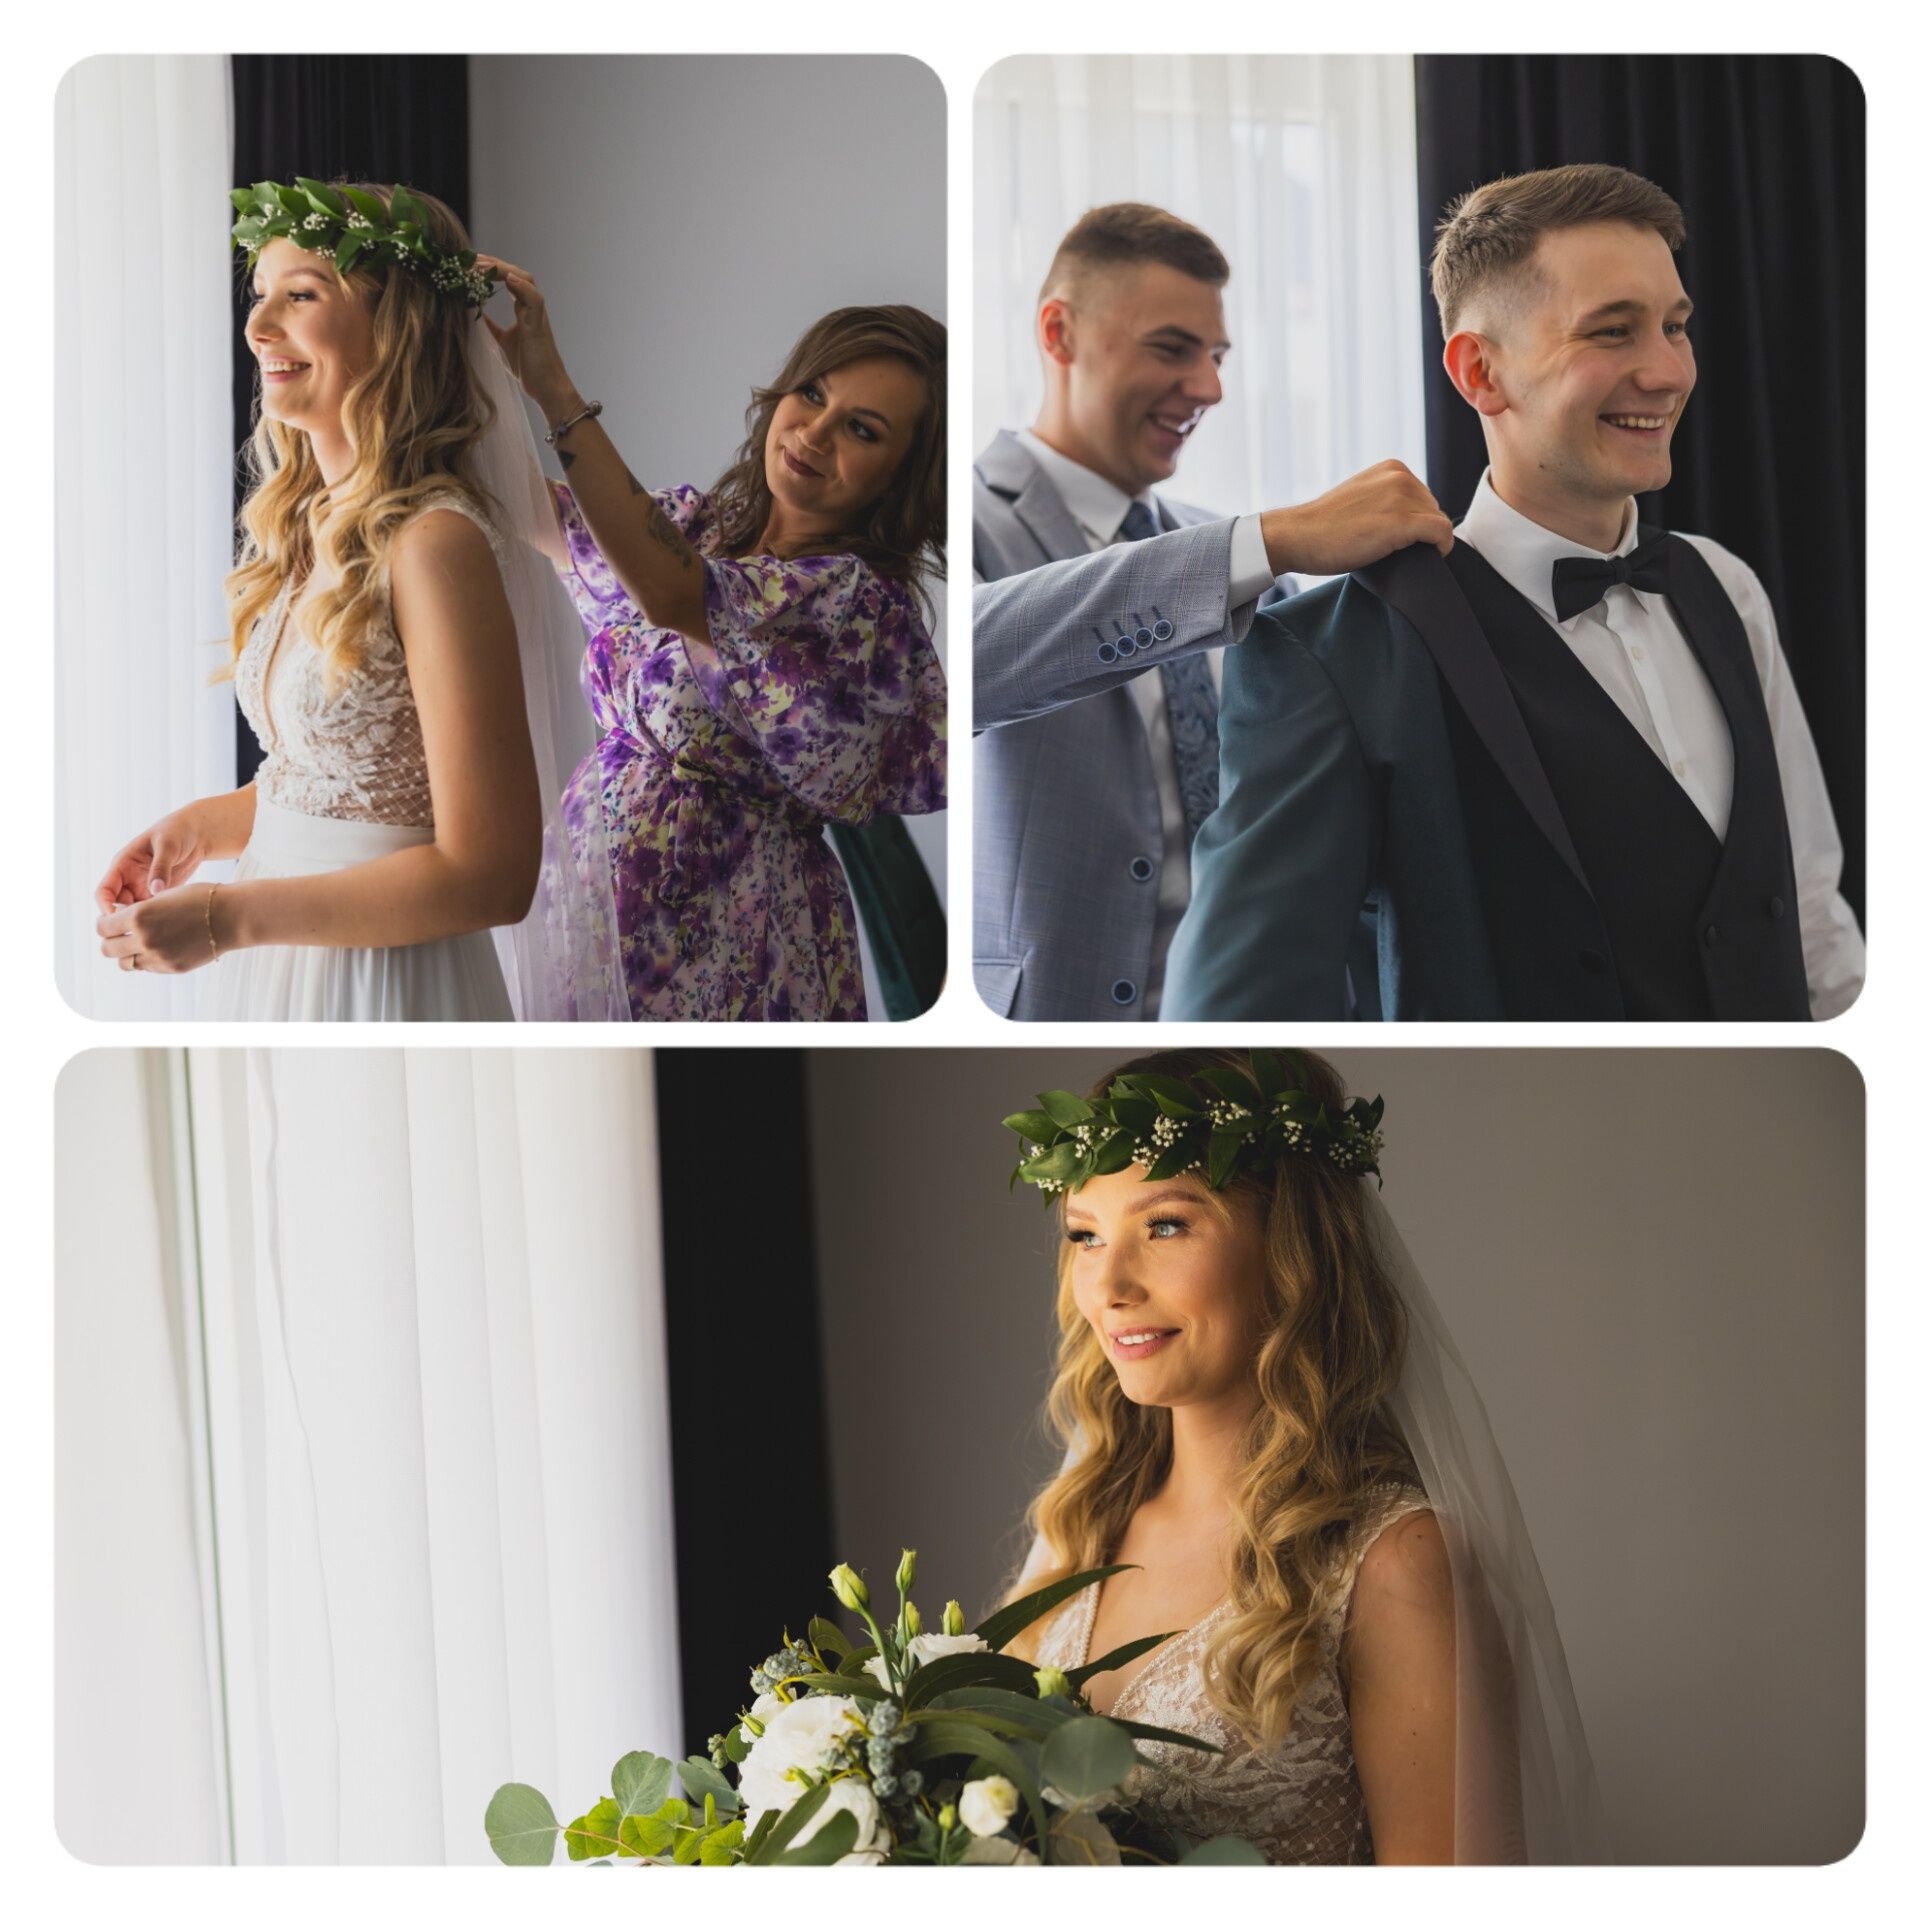 Zdjęcia na ślub wesele DOLNOŚLĄSKIE fotograf na ślub wesele